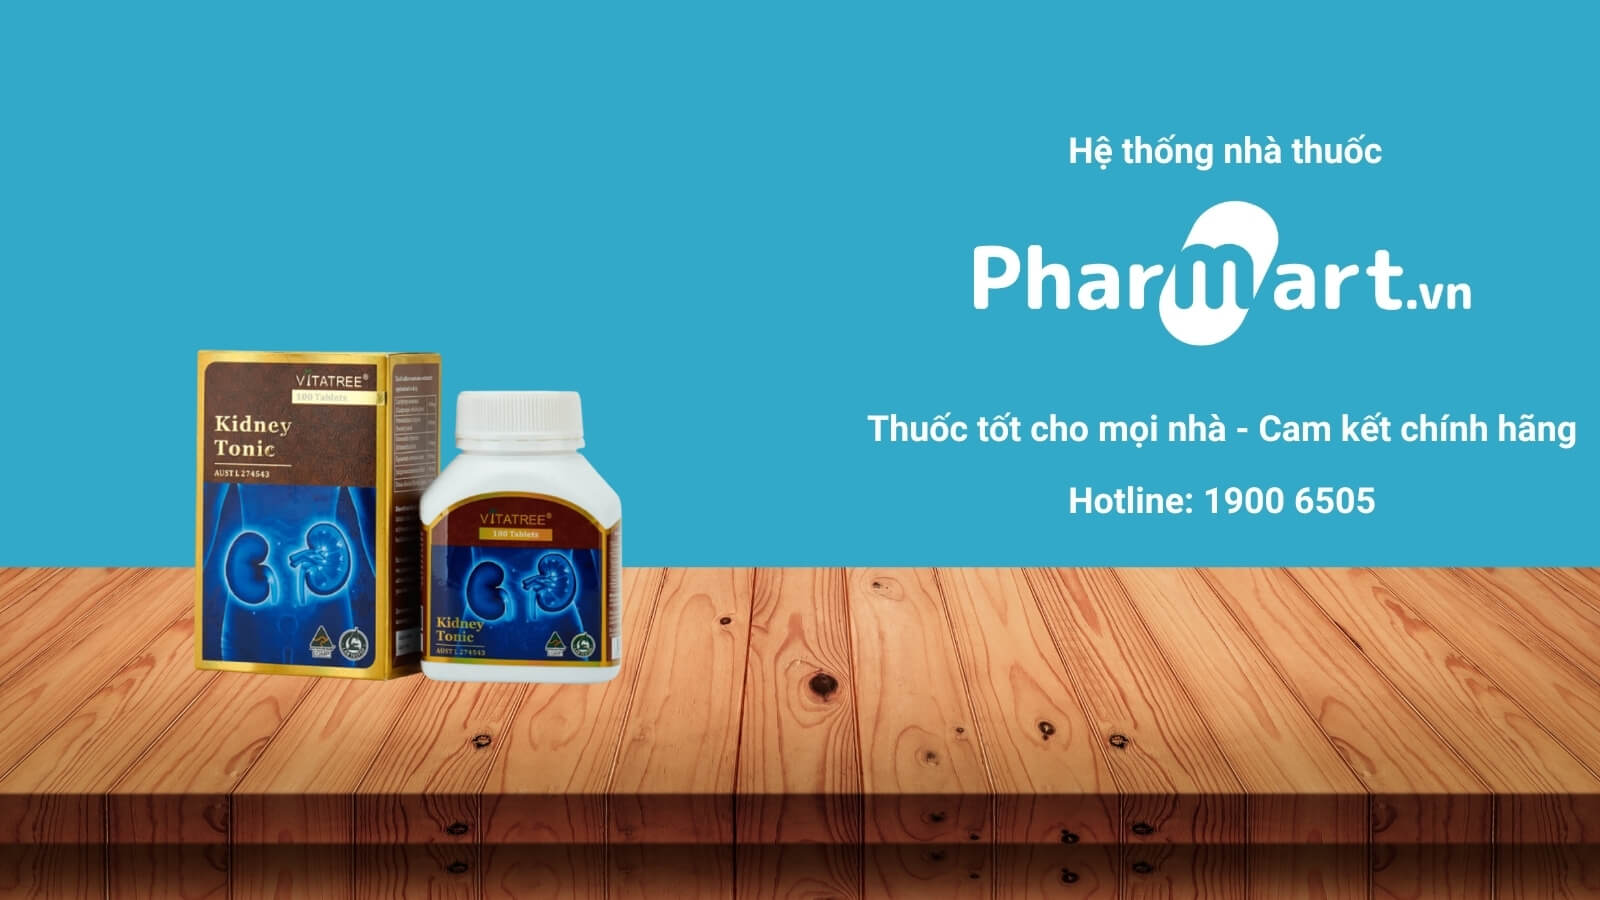 Mua Vitatree Kidney Tonic chính hãng tại Pharmart.vn 